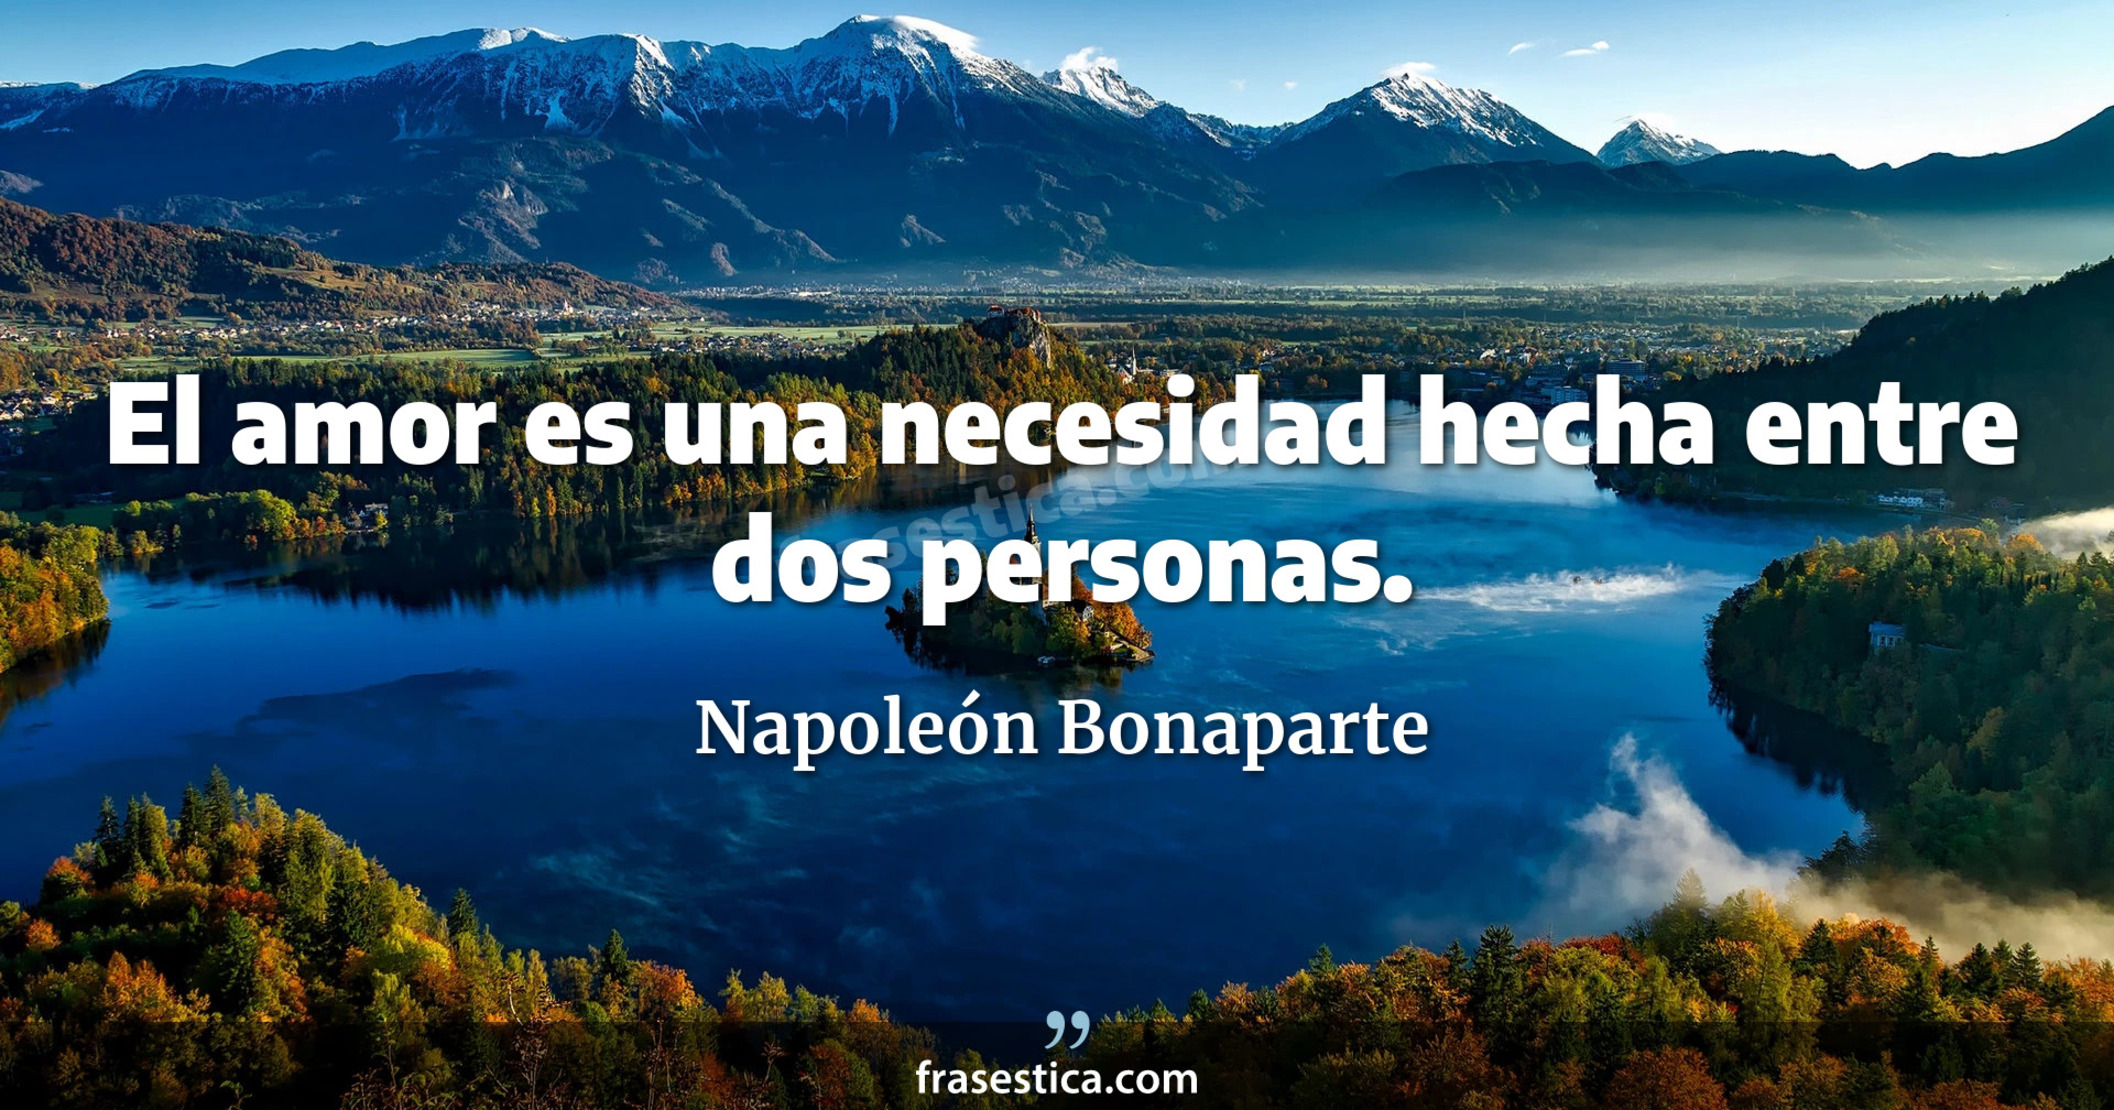 El amor es una necesidad hecha entre dos personas. - Napoleón Bonaparte